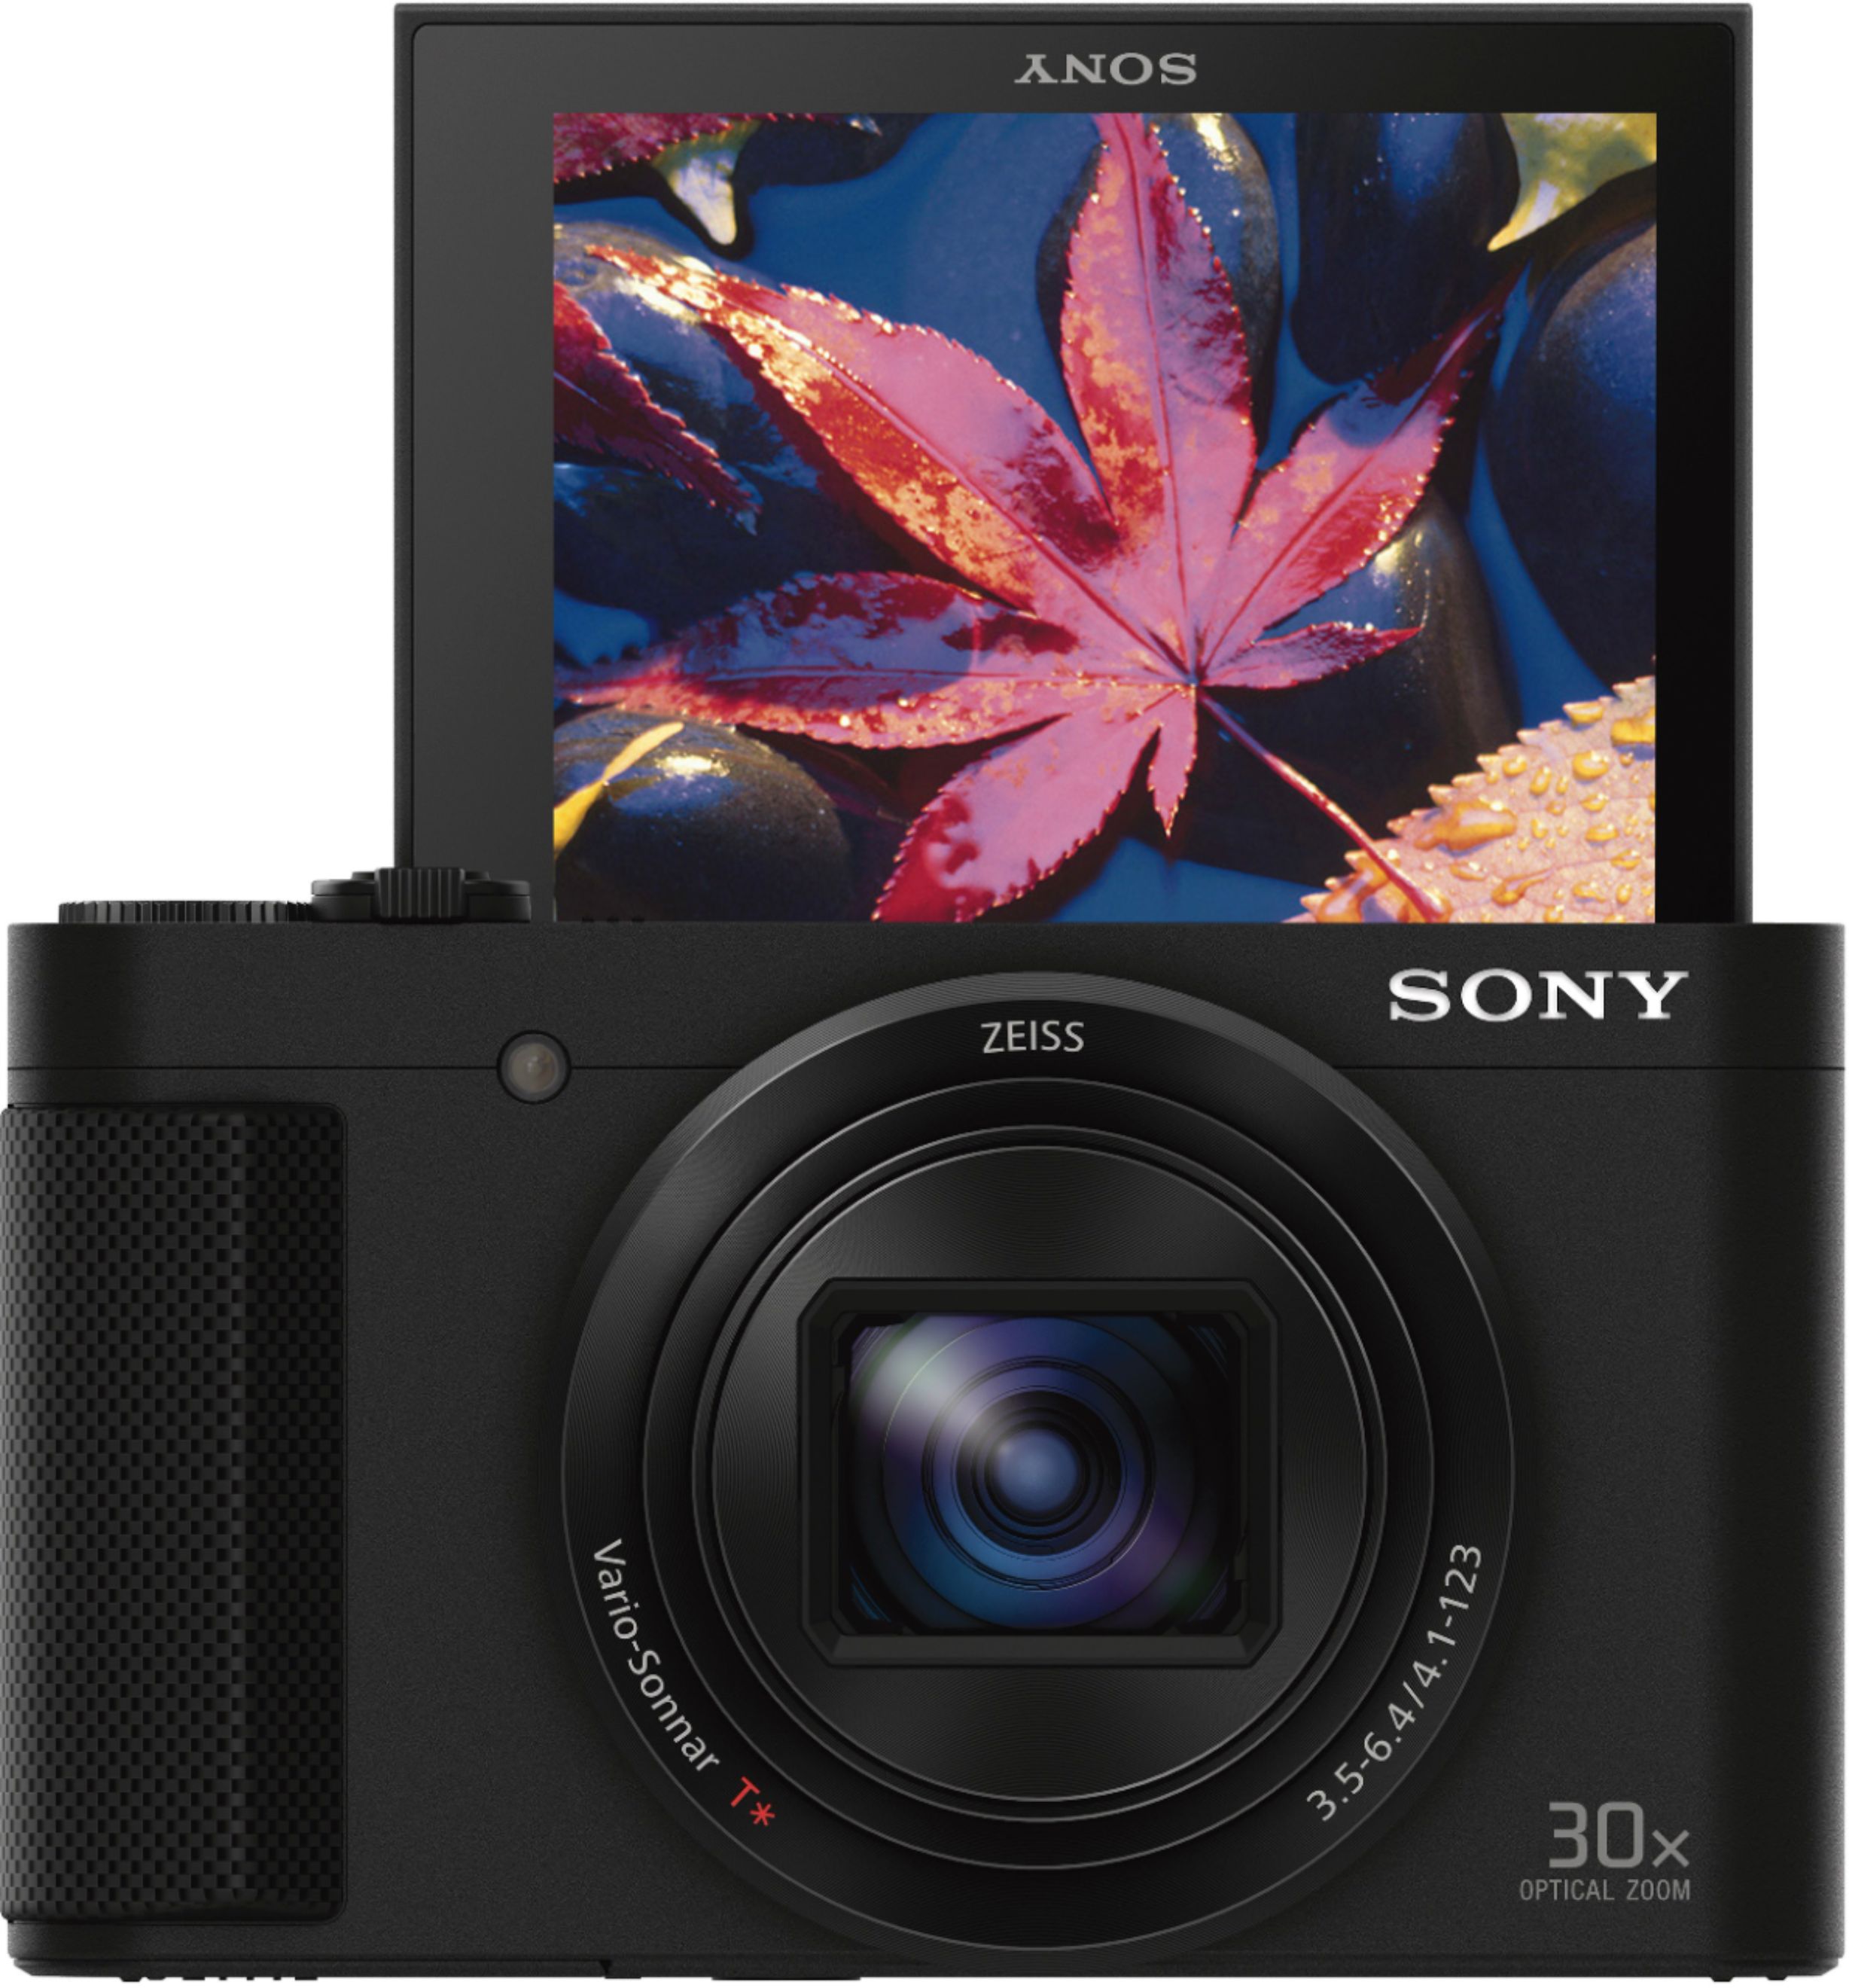 Best Buy: Sony Cyber-shot DSC-HX80 18.2-Megapixel Digital Camera